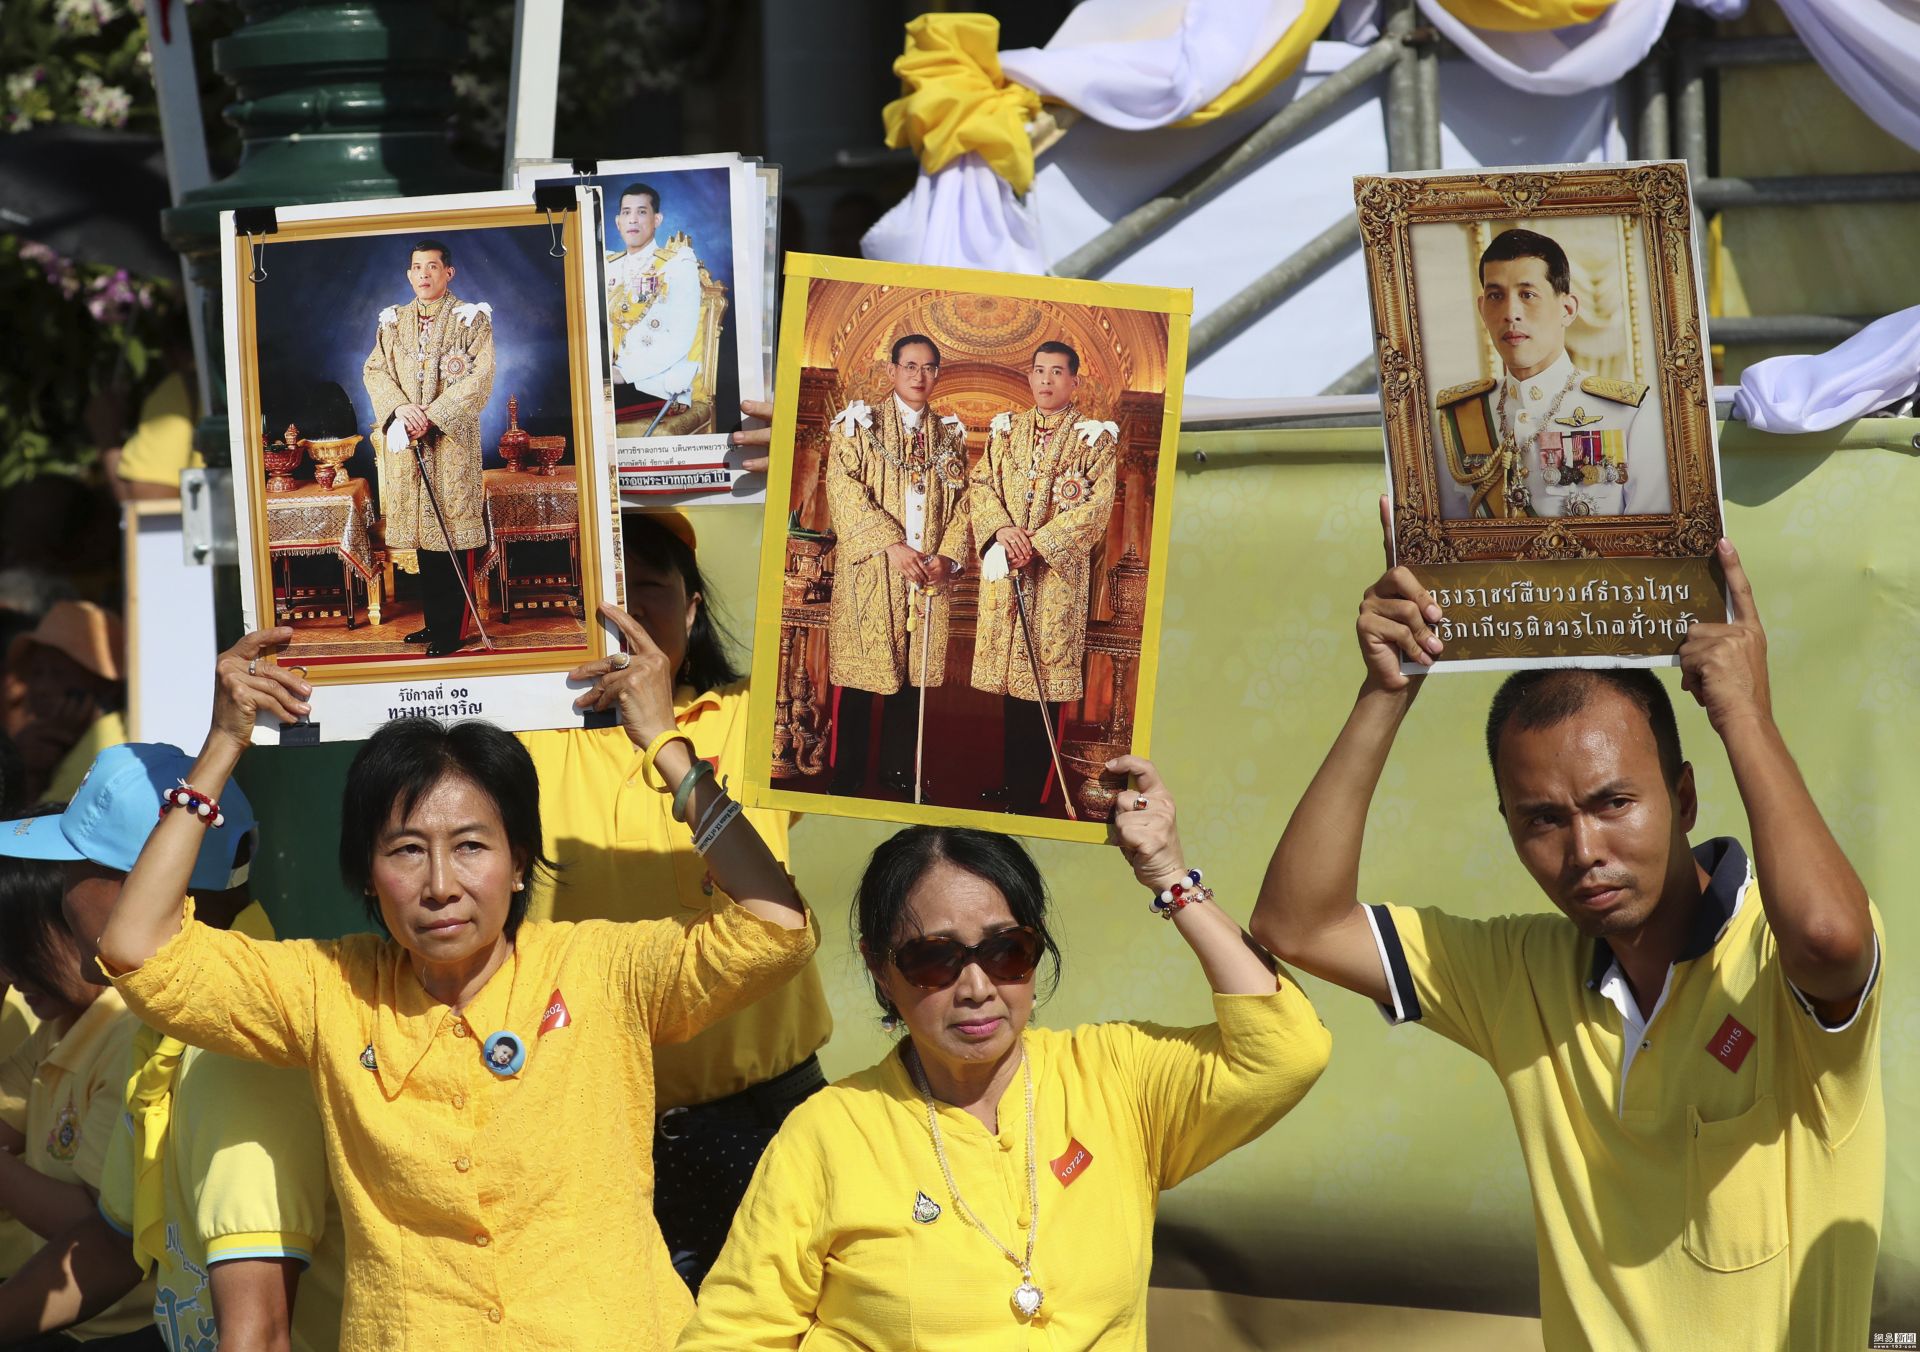 当地时间5月4日上午,泰国国王拉玛十世玛哈·哇集拉隆功加冕仪式正式